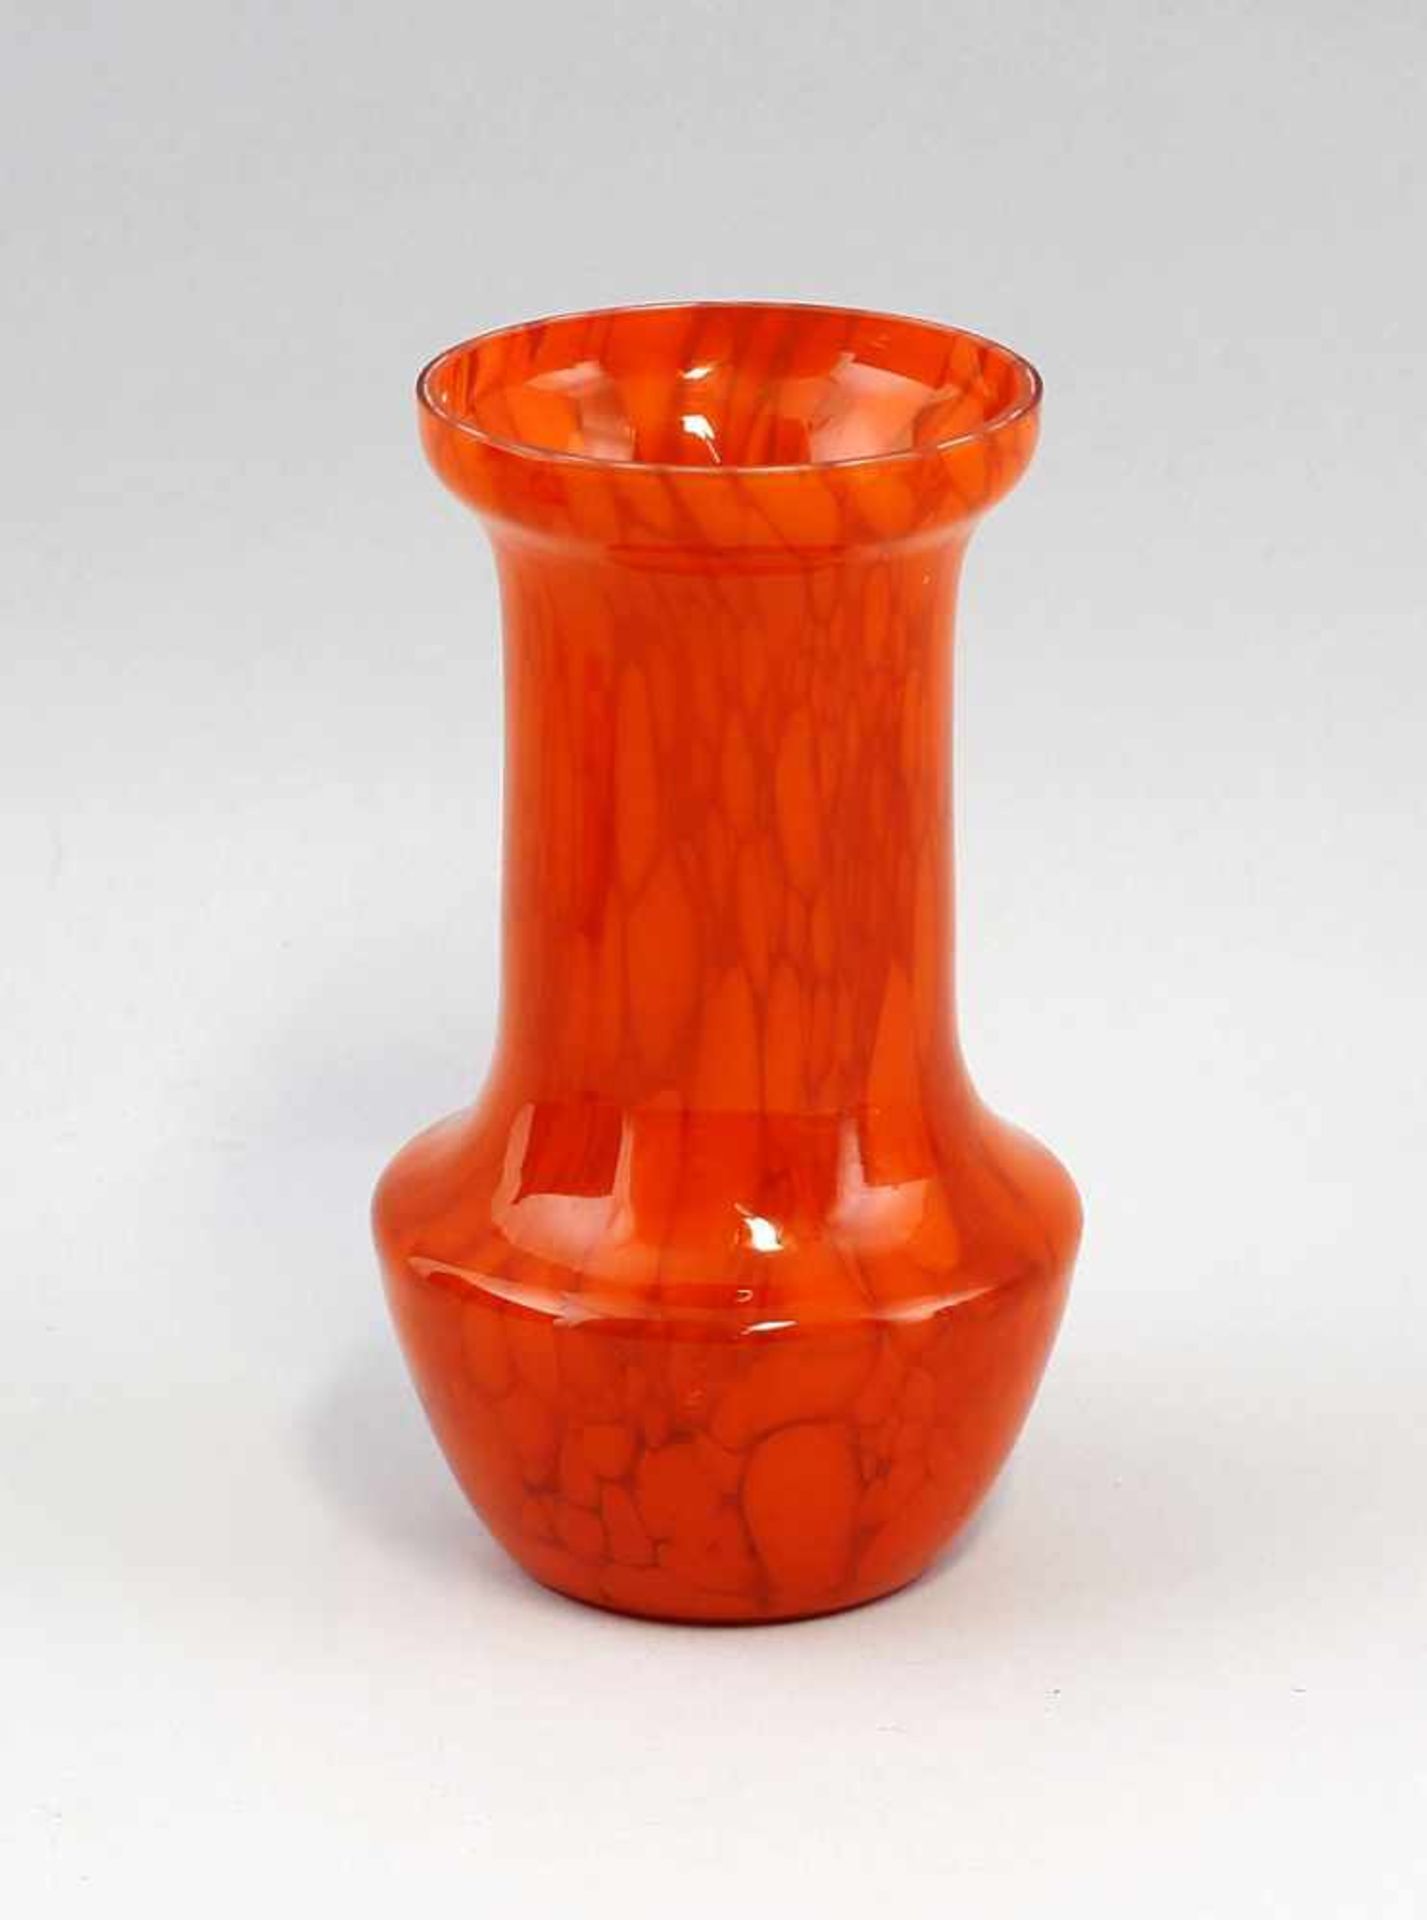 Orangefarbene Vase mit Einschmelzungen wohl 1. Hälfte 20. Jh., orangefarbenes Glas, formgeblasen,